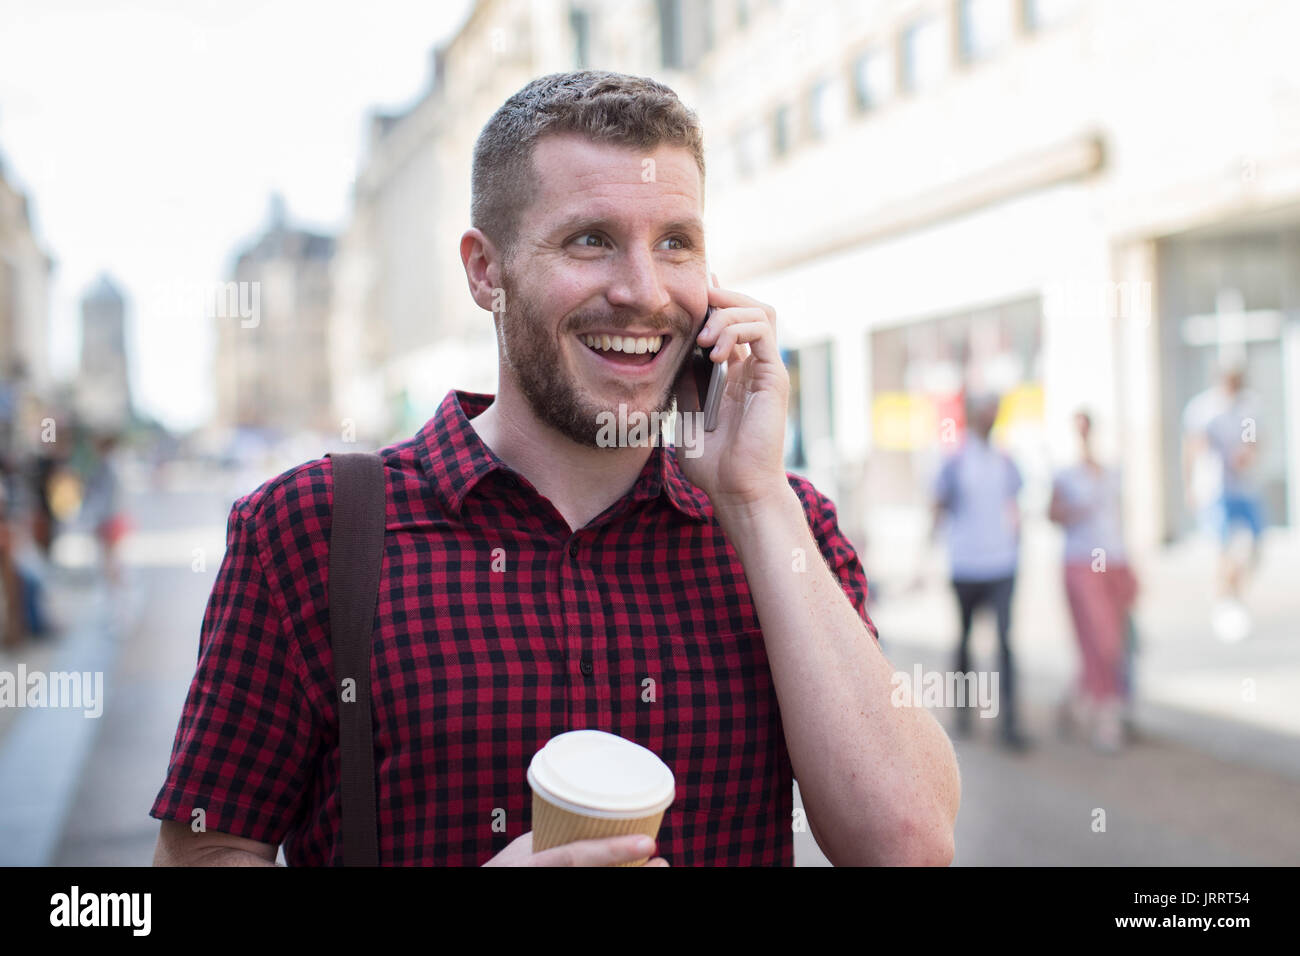 Mann zu Fuß entlang der Stadtstraße telefonieren mit Handy Stockfoto